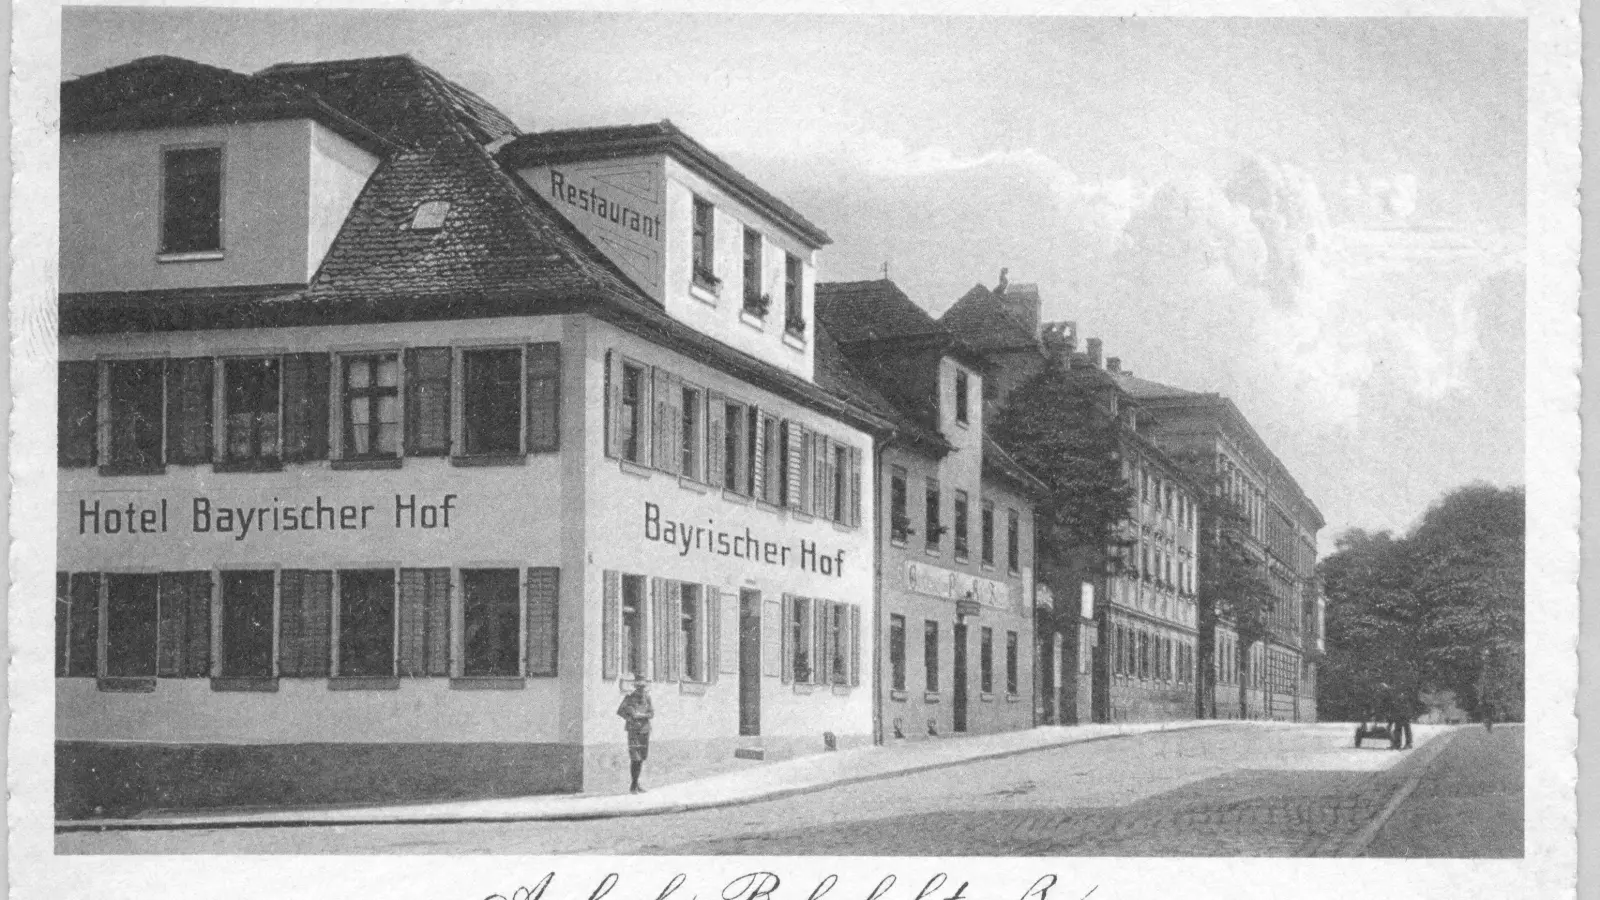 Eine Aufnahme aus den 1920er Jahren aus der Bahnhofstraße: Das Hotel Bayrischer Hof nebst Restaurant, das für seine gute Küche und Weizenbier bekannt war, versank bei den Bomben-Angriffen der Alliierten auf Ansbach im Jahr 1945 in Schutt und Asche. (Repro: Alexander Biernoth)